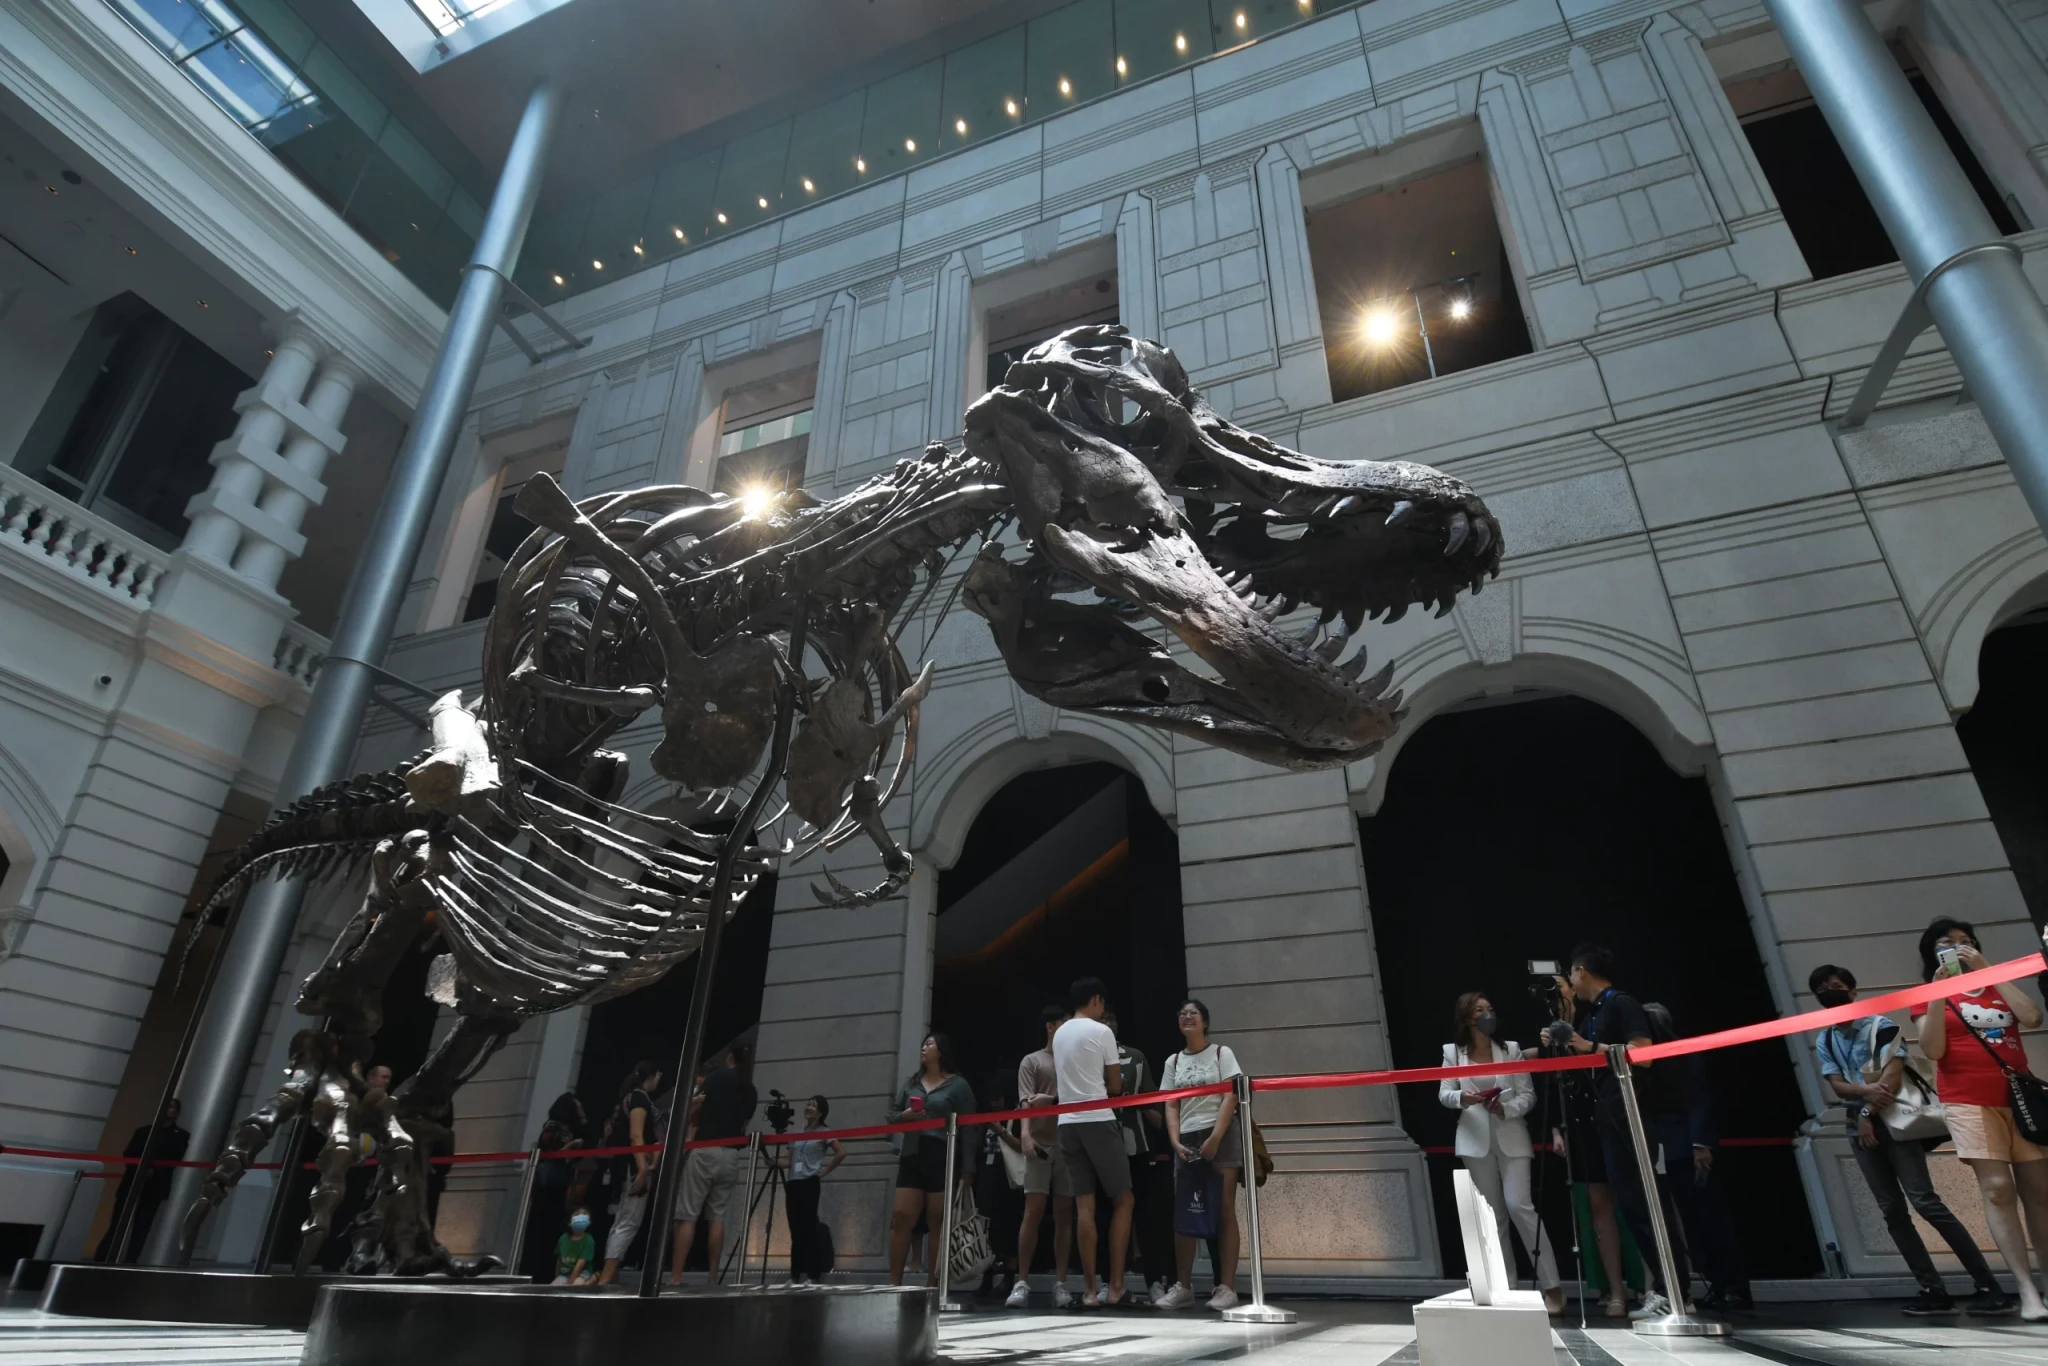 Christie’s stáhl kostru Tyrannosaura rexe z plánované aukce. Její pravost byla zpochybněna